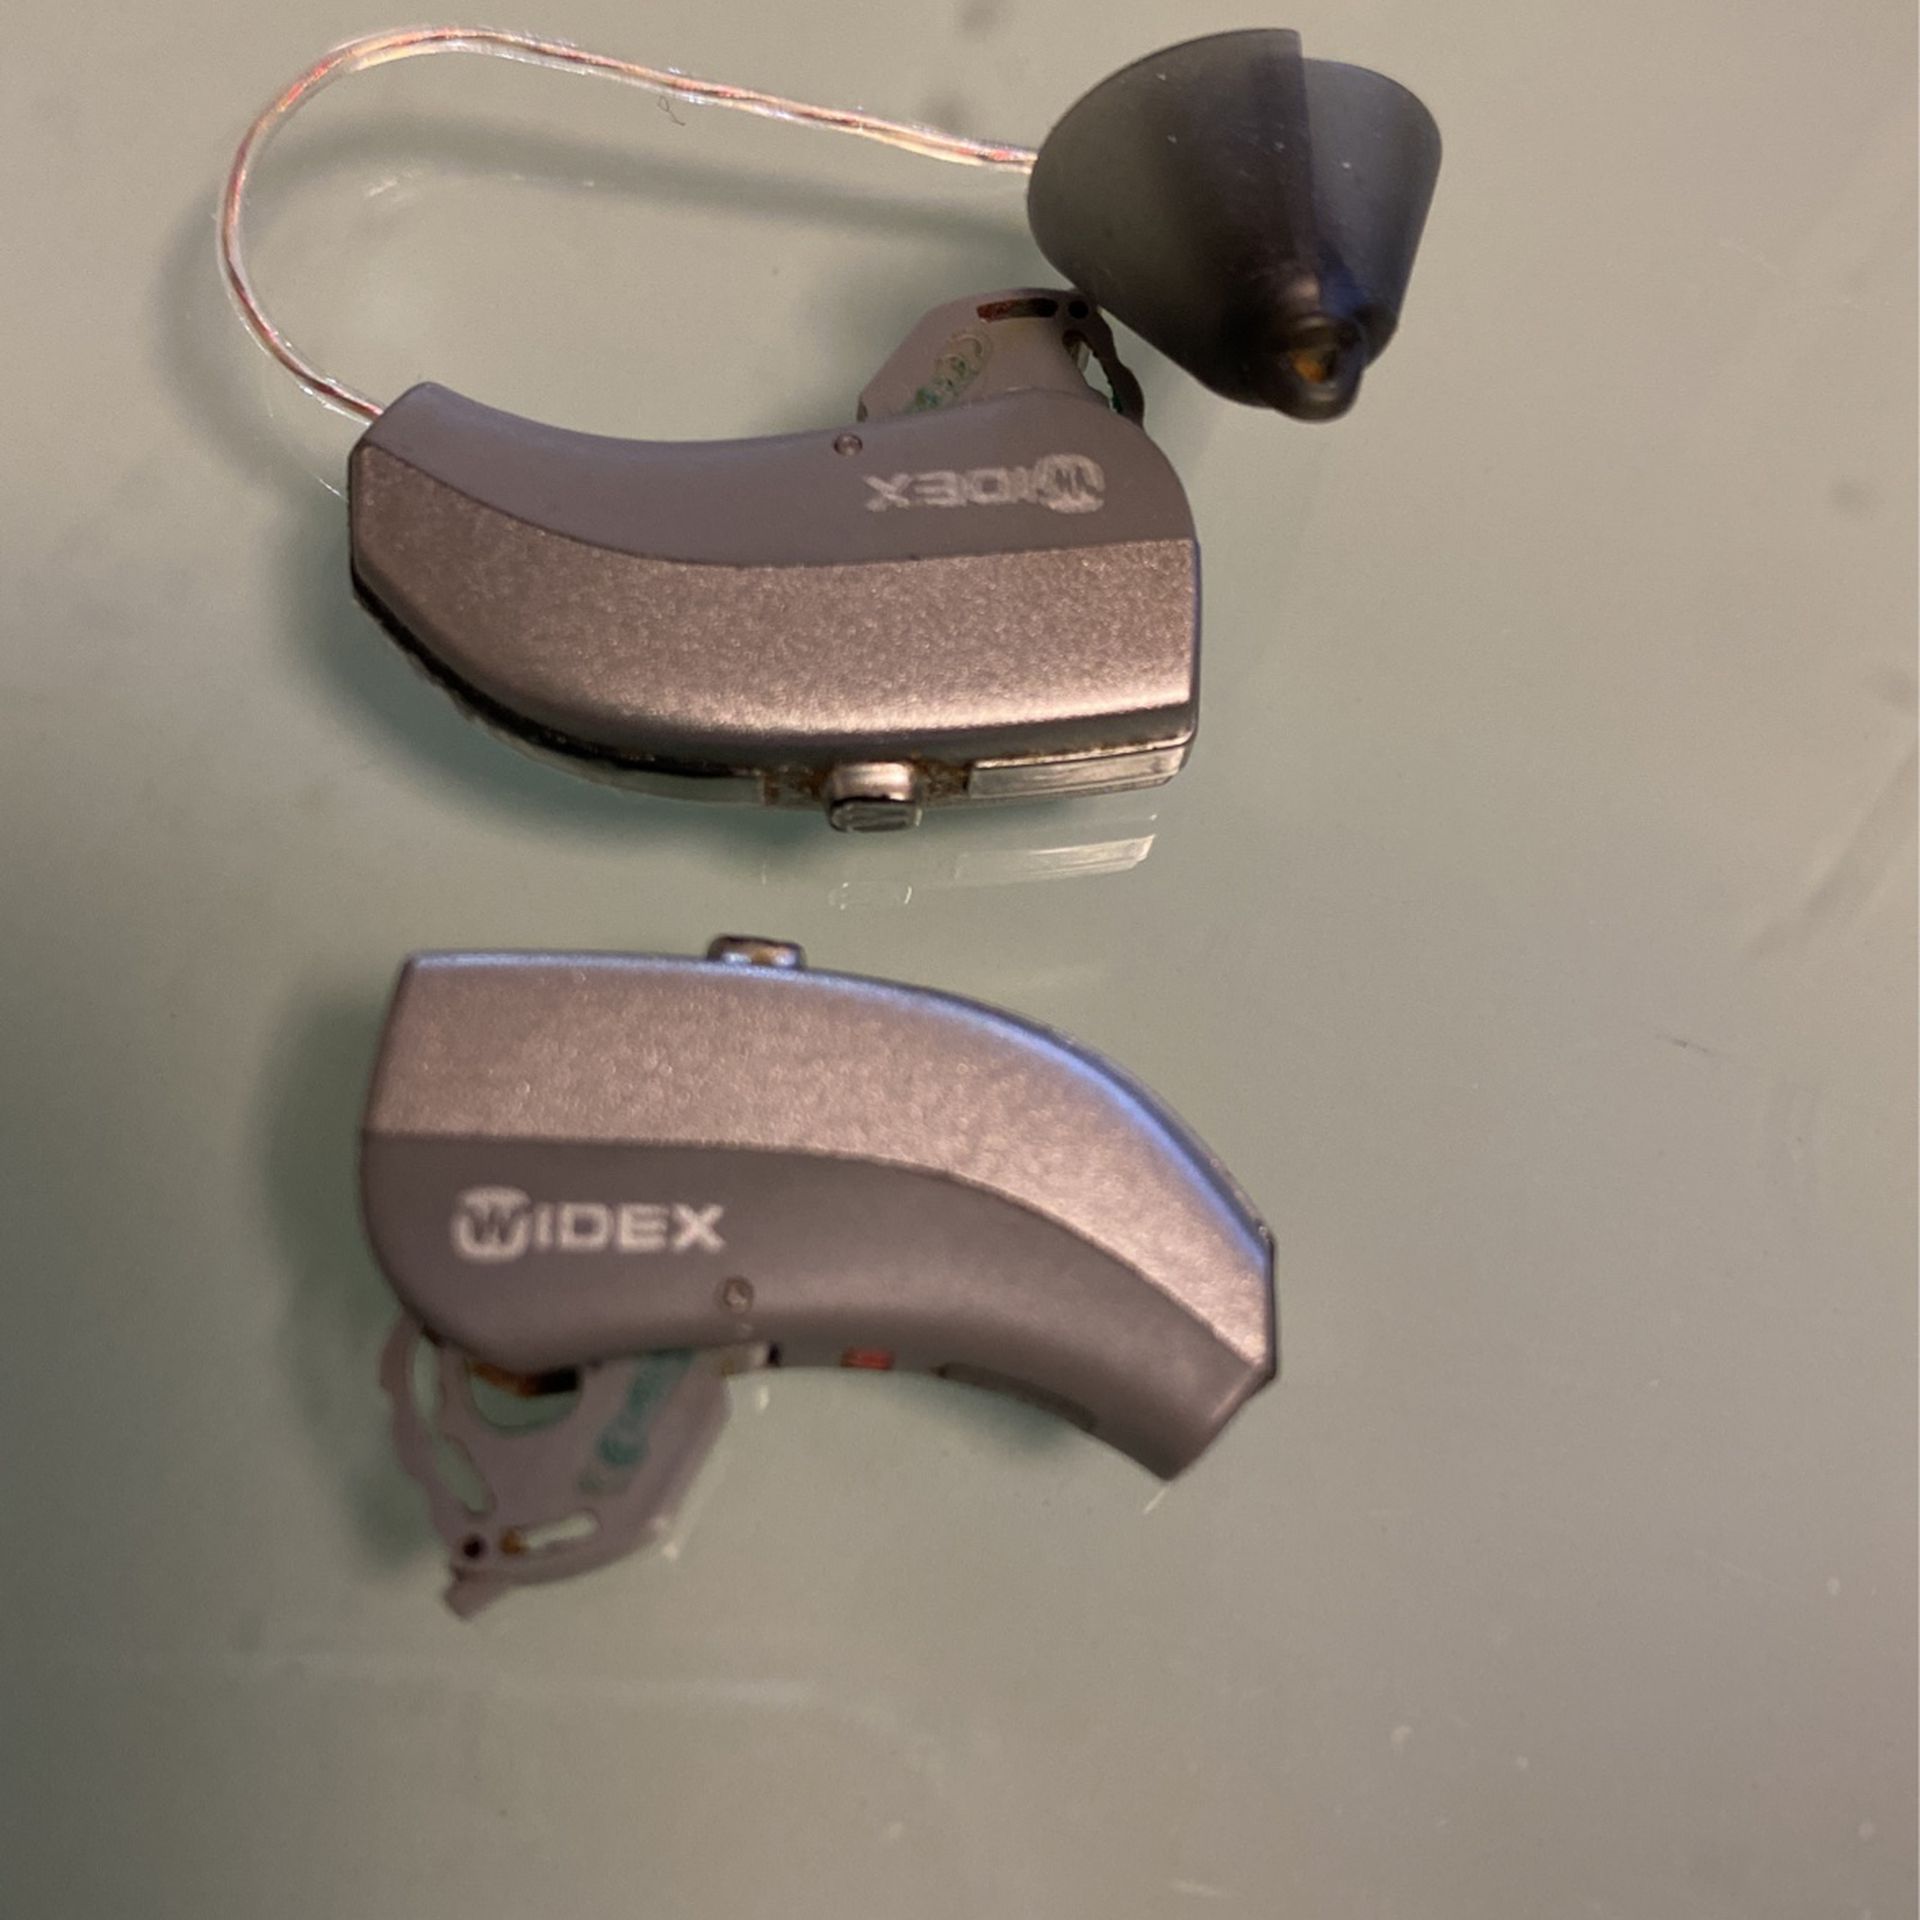 Widex Hearing Aides